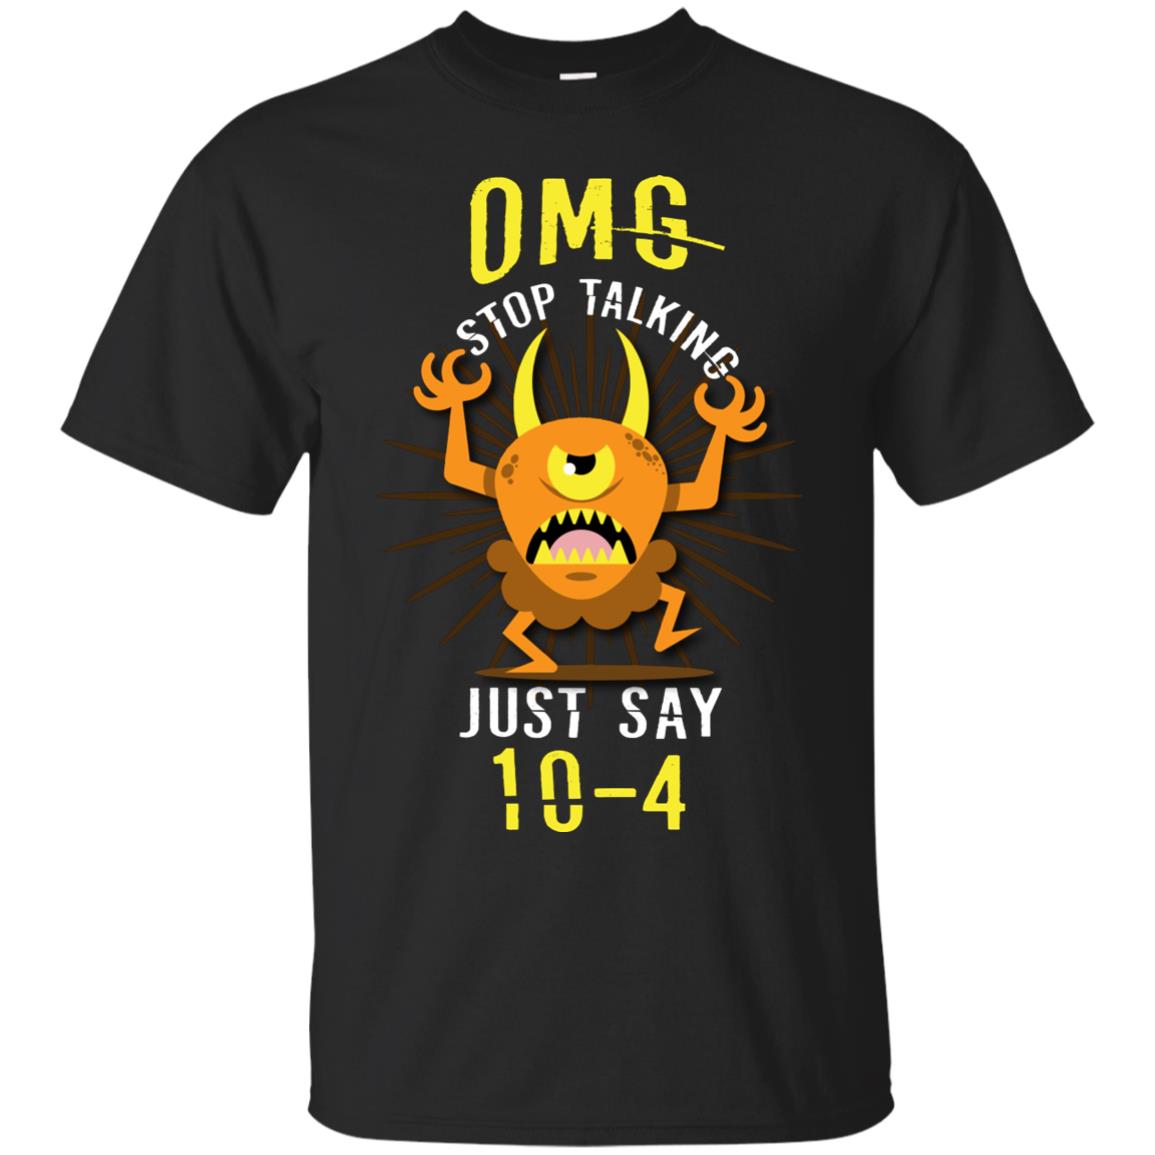 Omg Stop Talking Just Say 10-4 T-shirt